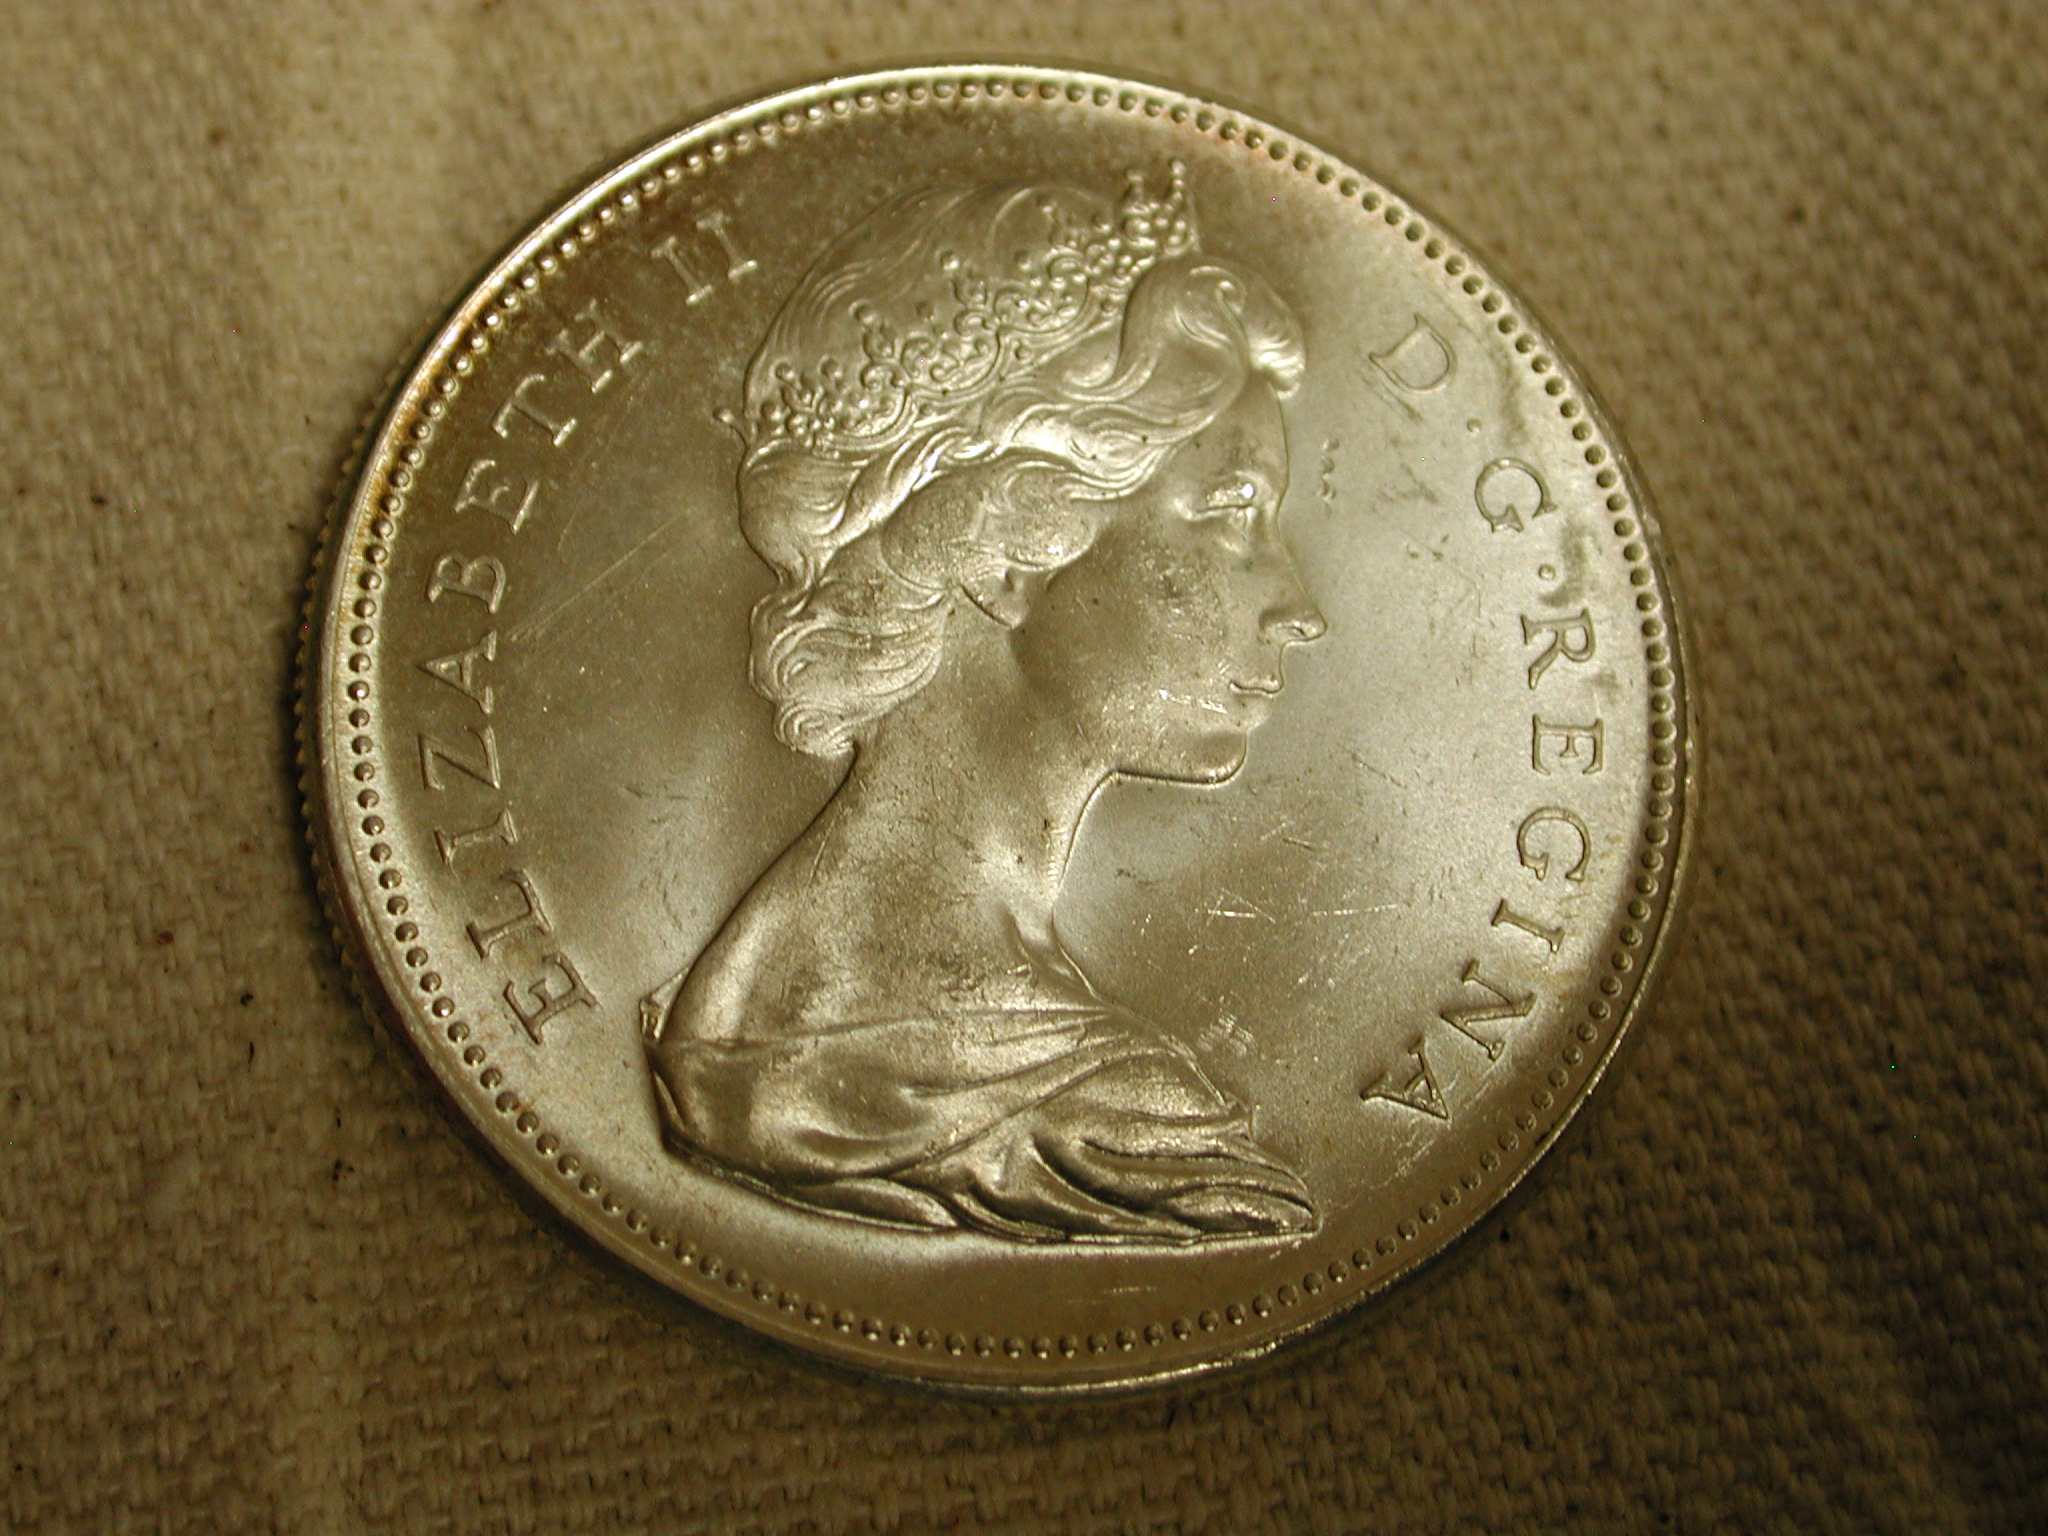 1967 Canada Dollar Gem Uncirculated Blazing luster